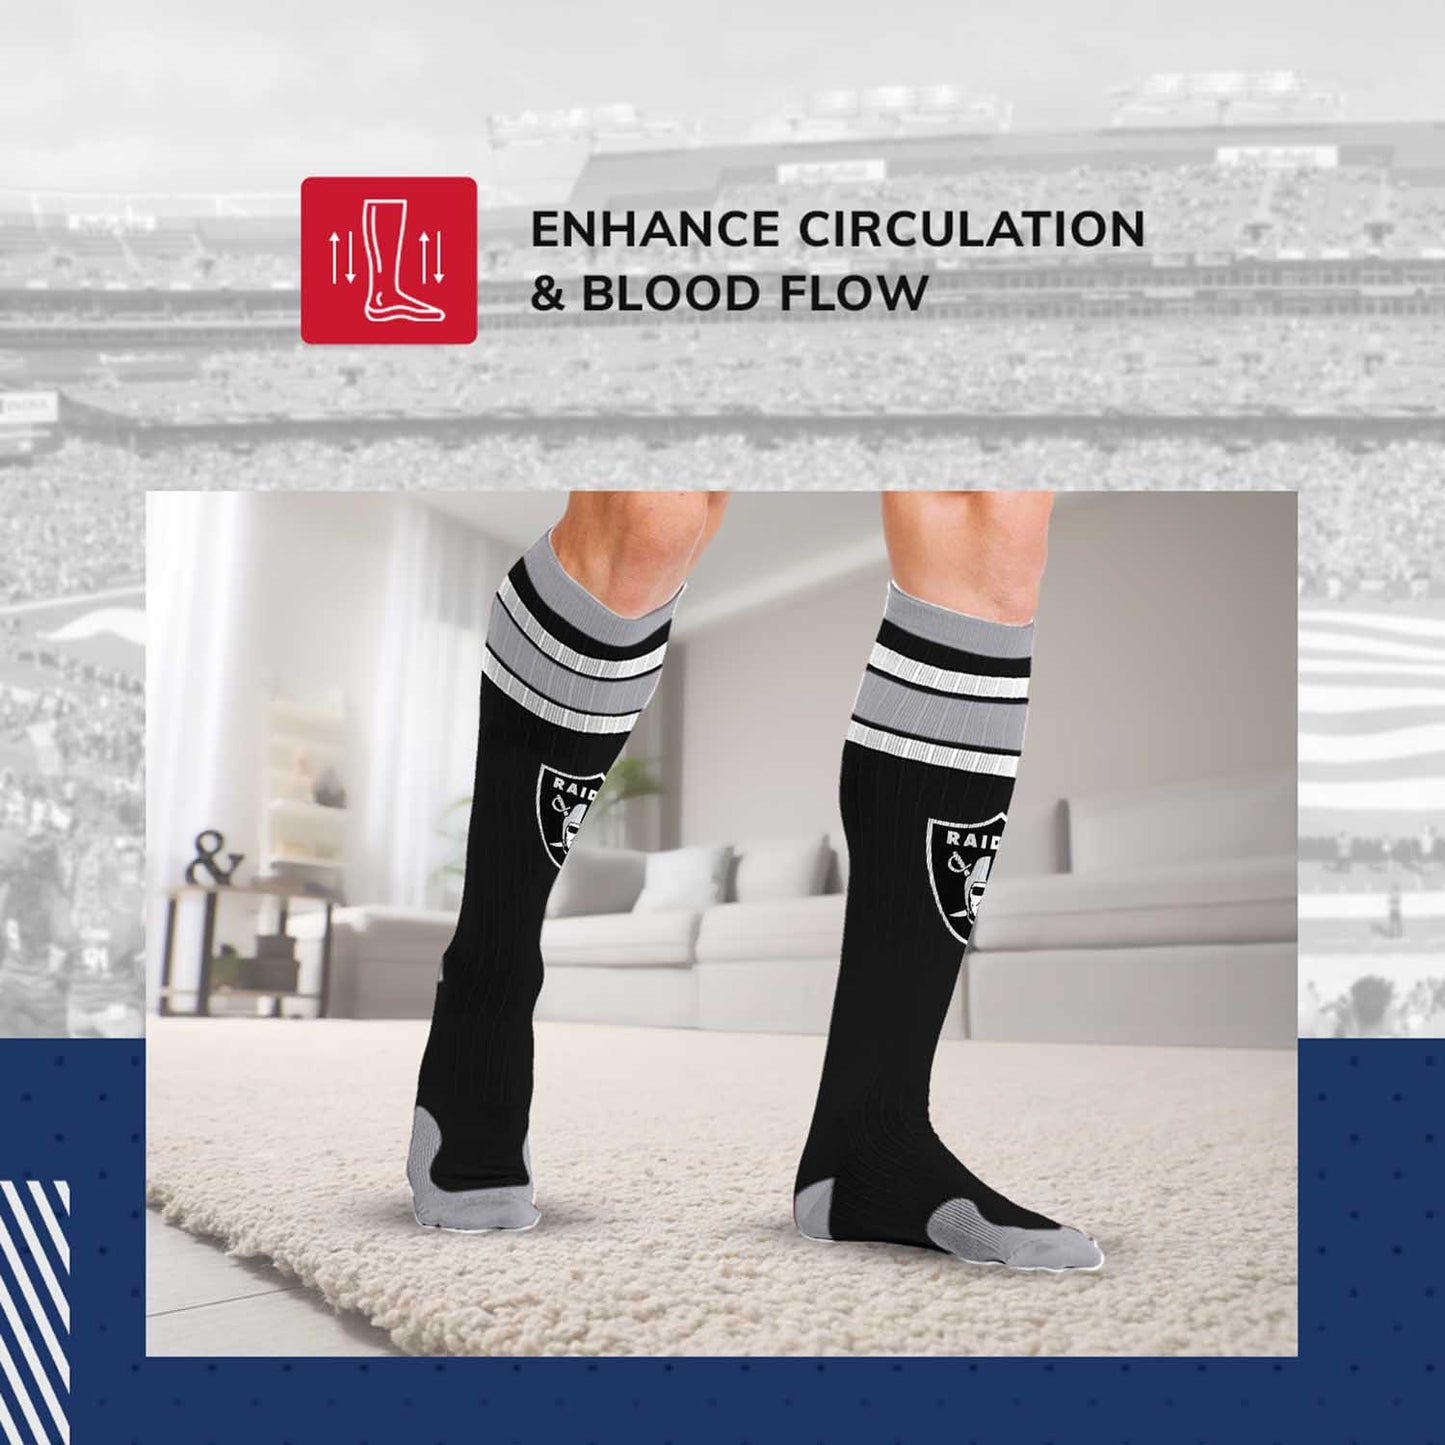 Las Vegas Raiders NFL Adult Compression Socks - Black